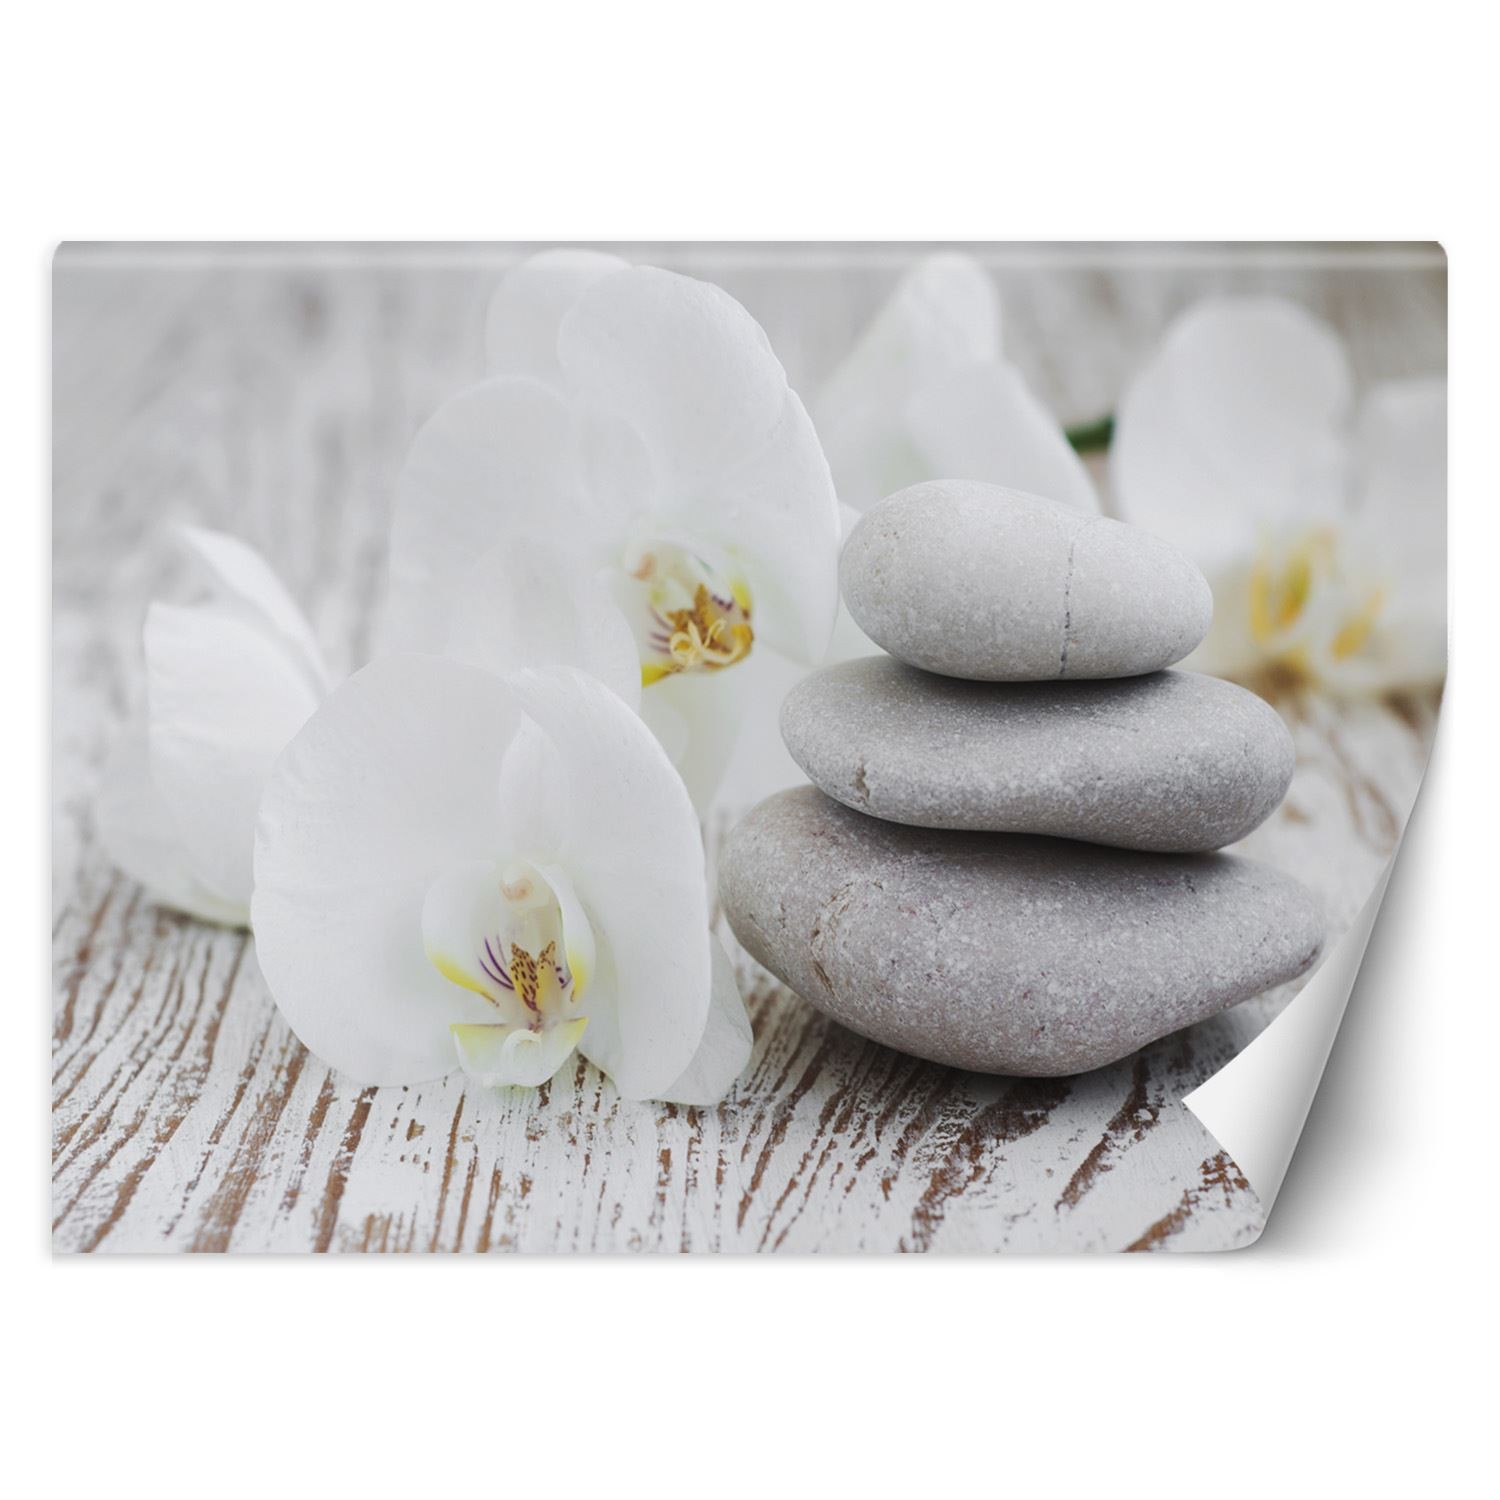 Trend24 – Behang – Flowers & Zen Stones – Vliesbehang – Fotobehang – Behang Woonkamer – 450x315x2 cm – Incl. behanglijm